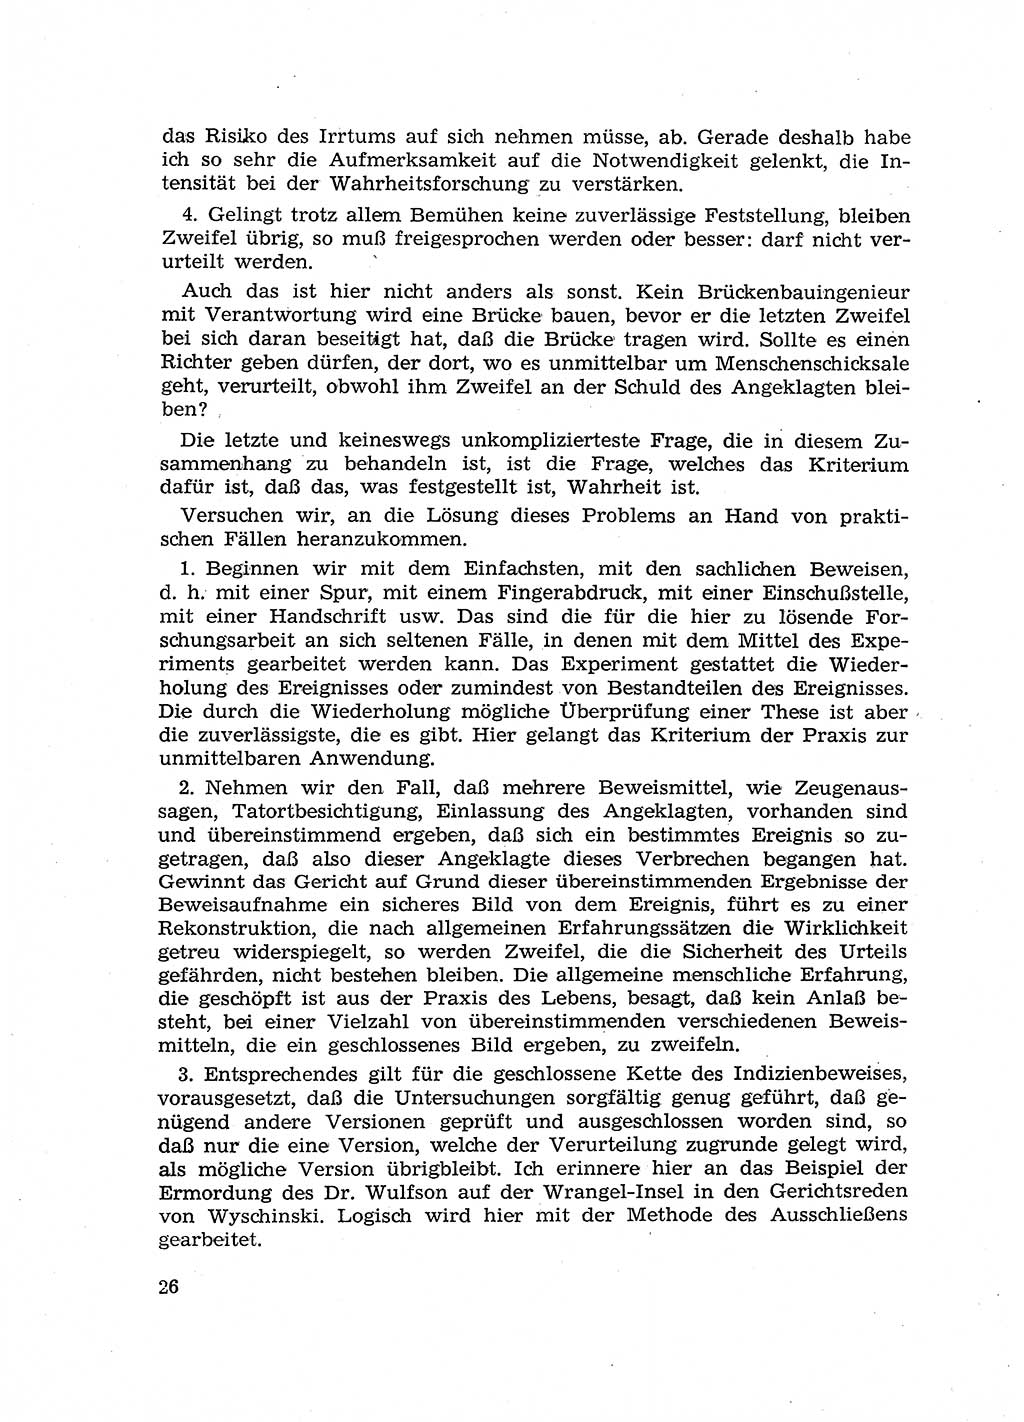 Fragen des Beweisrechts im Strafprozess [Deutsche Demokratische Republik (DDR)] 1956, Seite 26 (Fr. BeweisR. Str.-Proz. DDR 1956, S. 26)